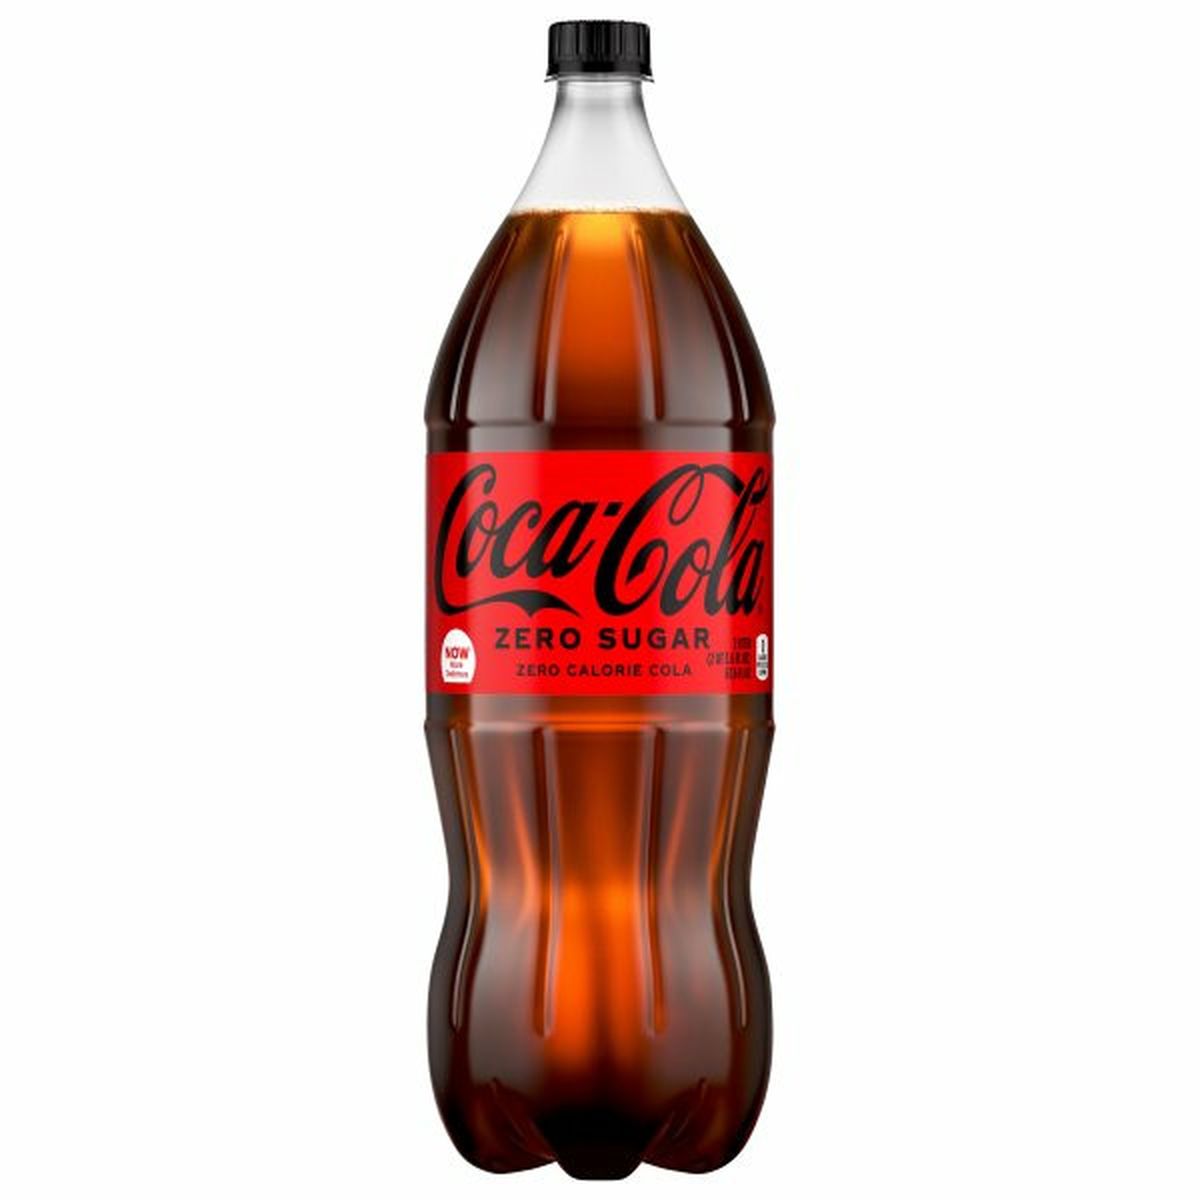 Calories in Coca-Cola Cola, Zero Sugar